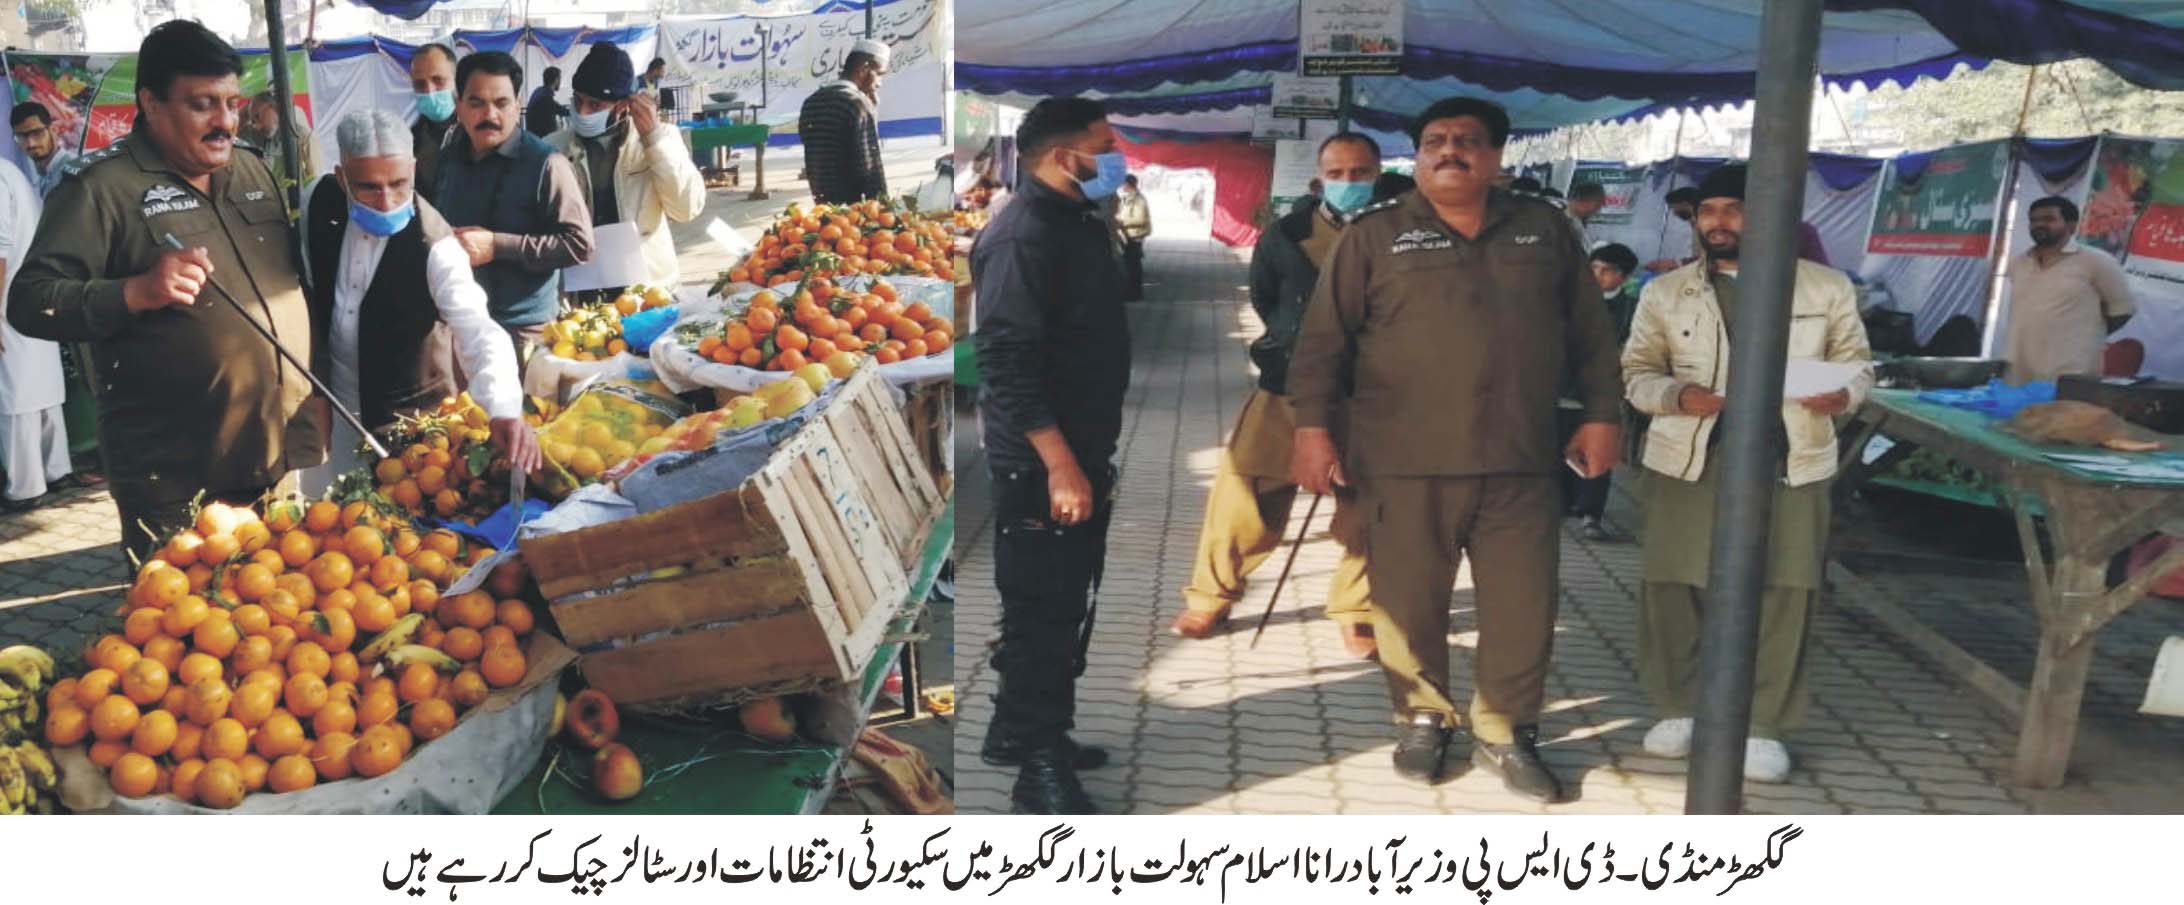 ڈی ایس پی وزیر آباد رانا اسلام کا ہمراہ سٹاف سہولت بازار کا سکیورٹی کے حوالے سے اچانک وزٹ